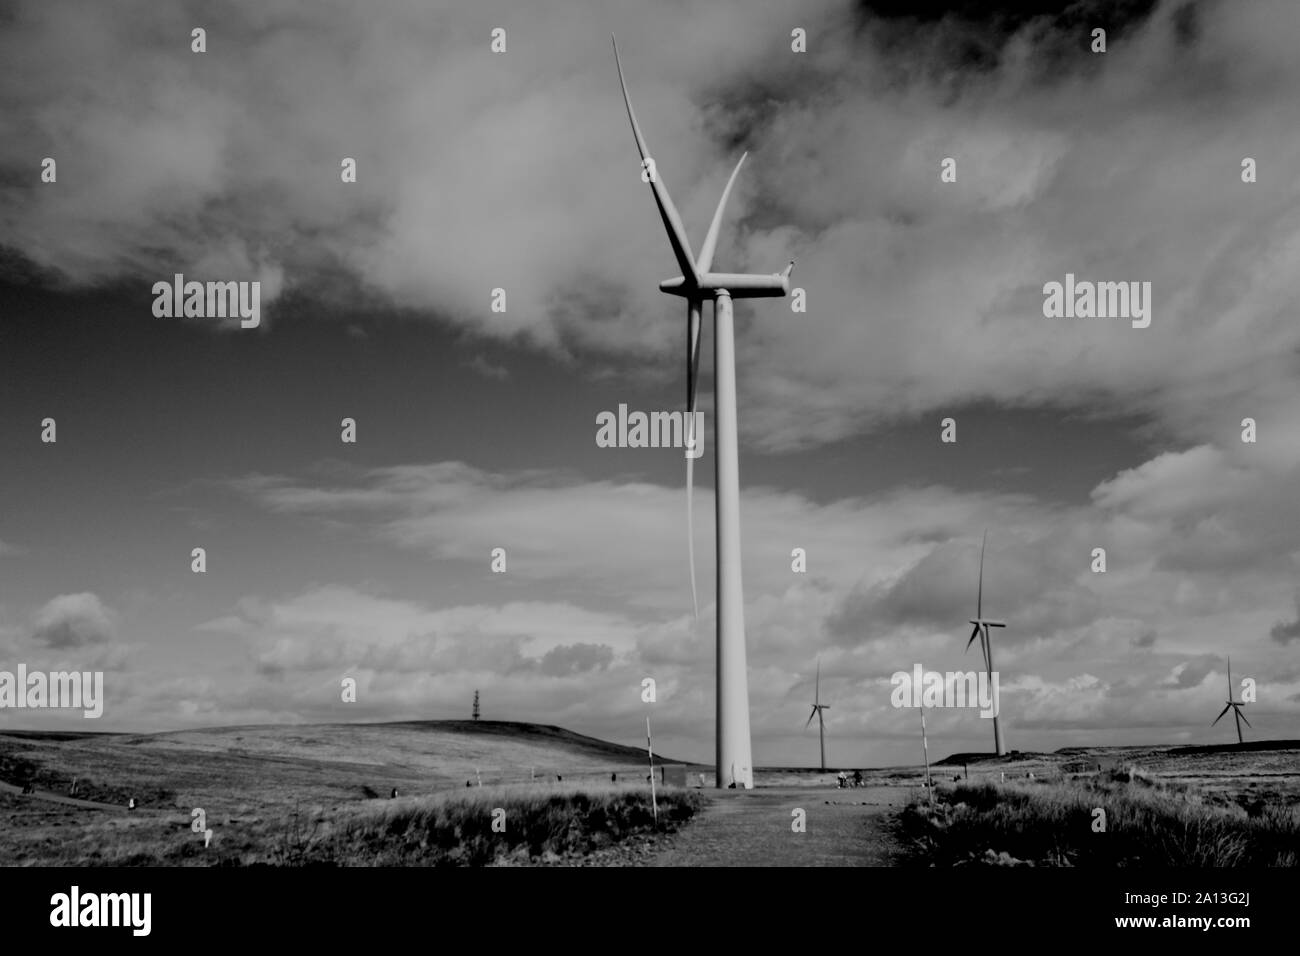 Whitelee Wind Farm, Scotland Stock Photo